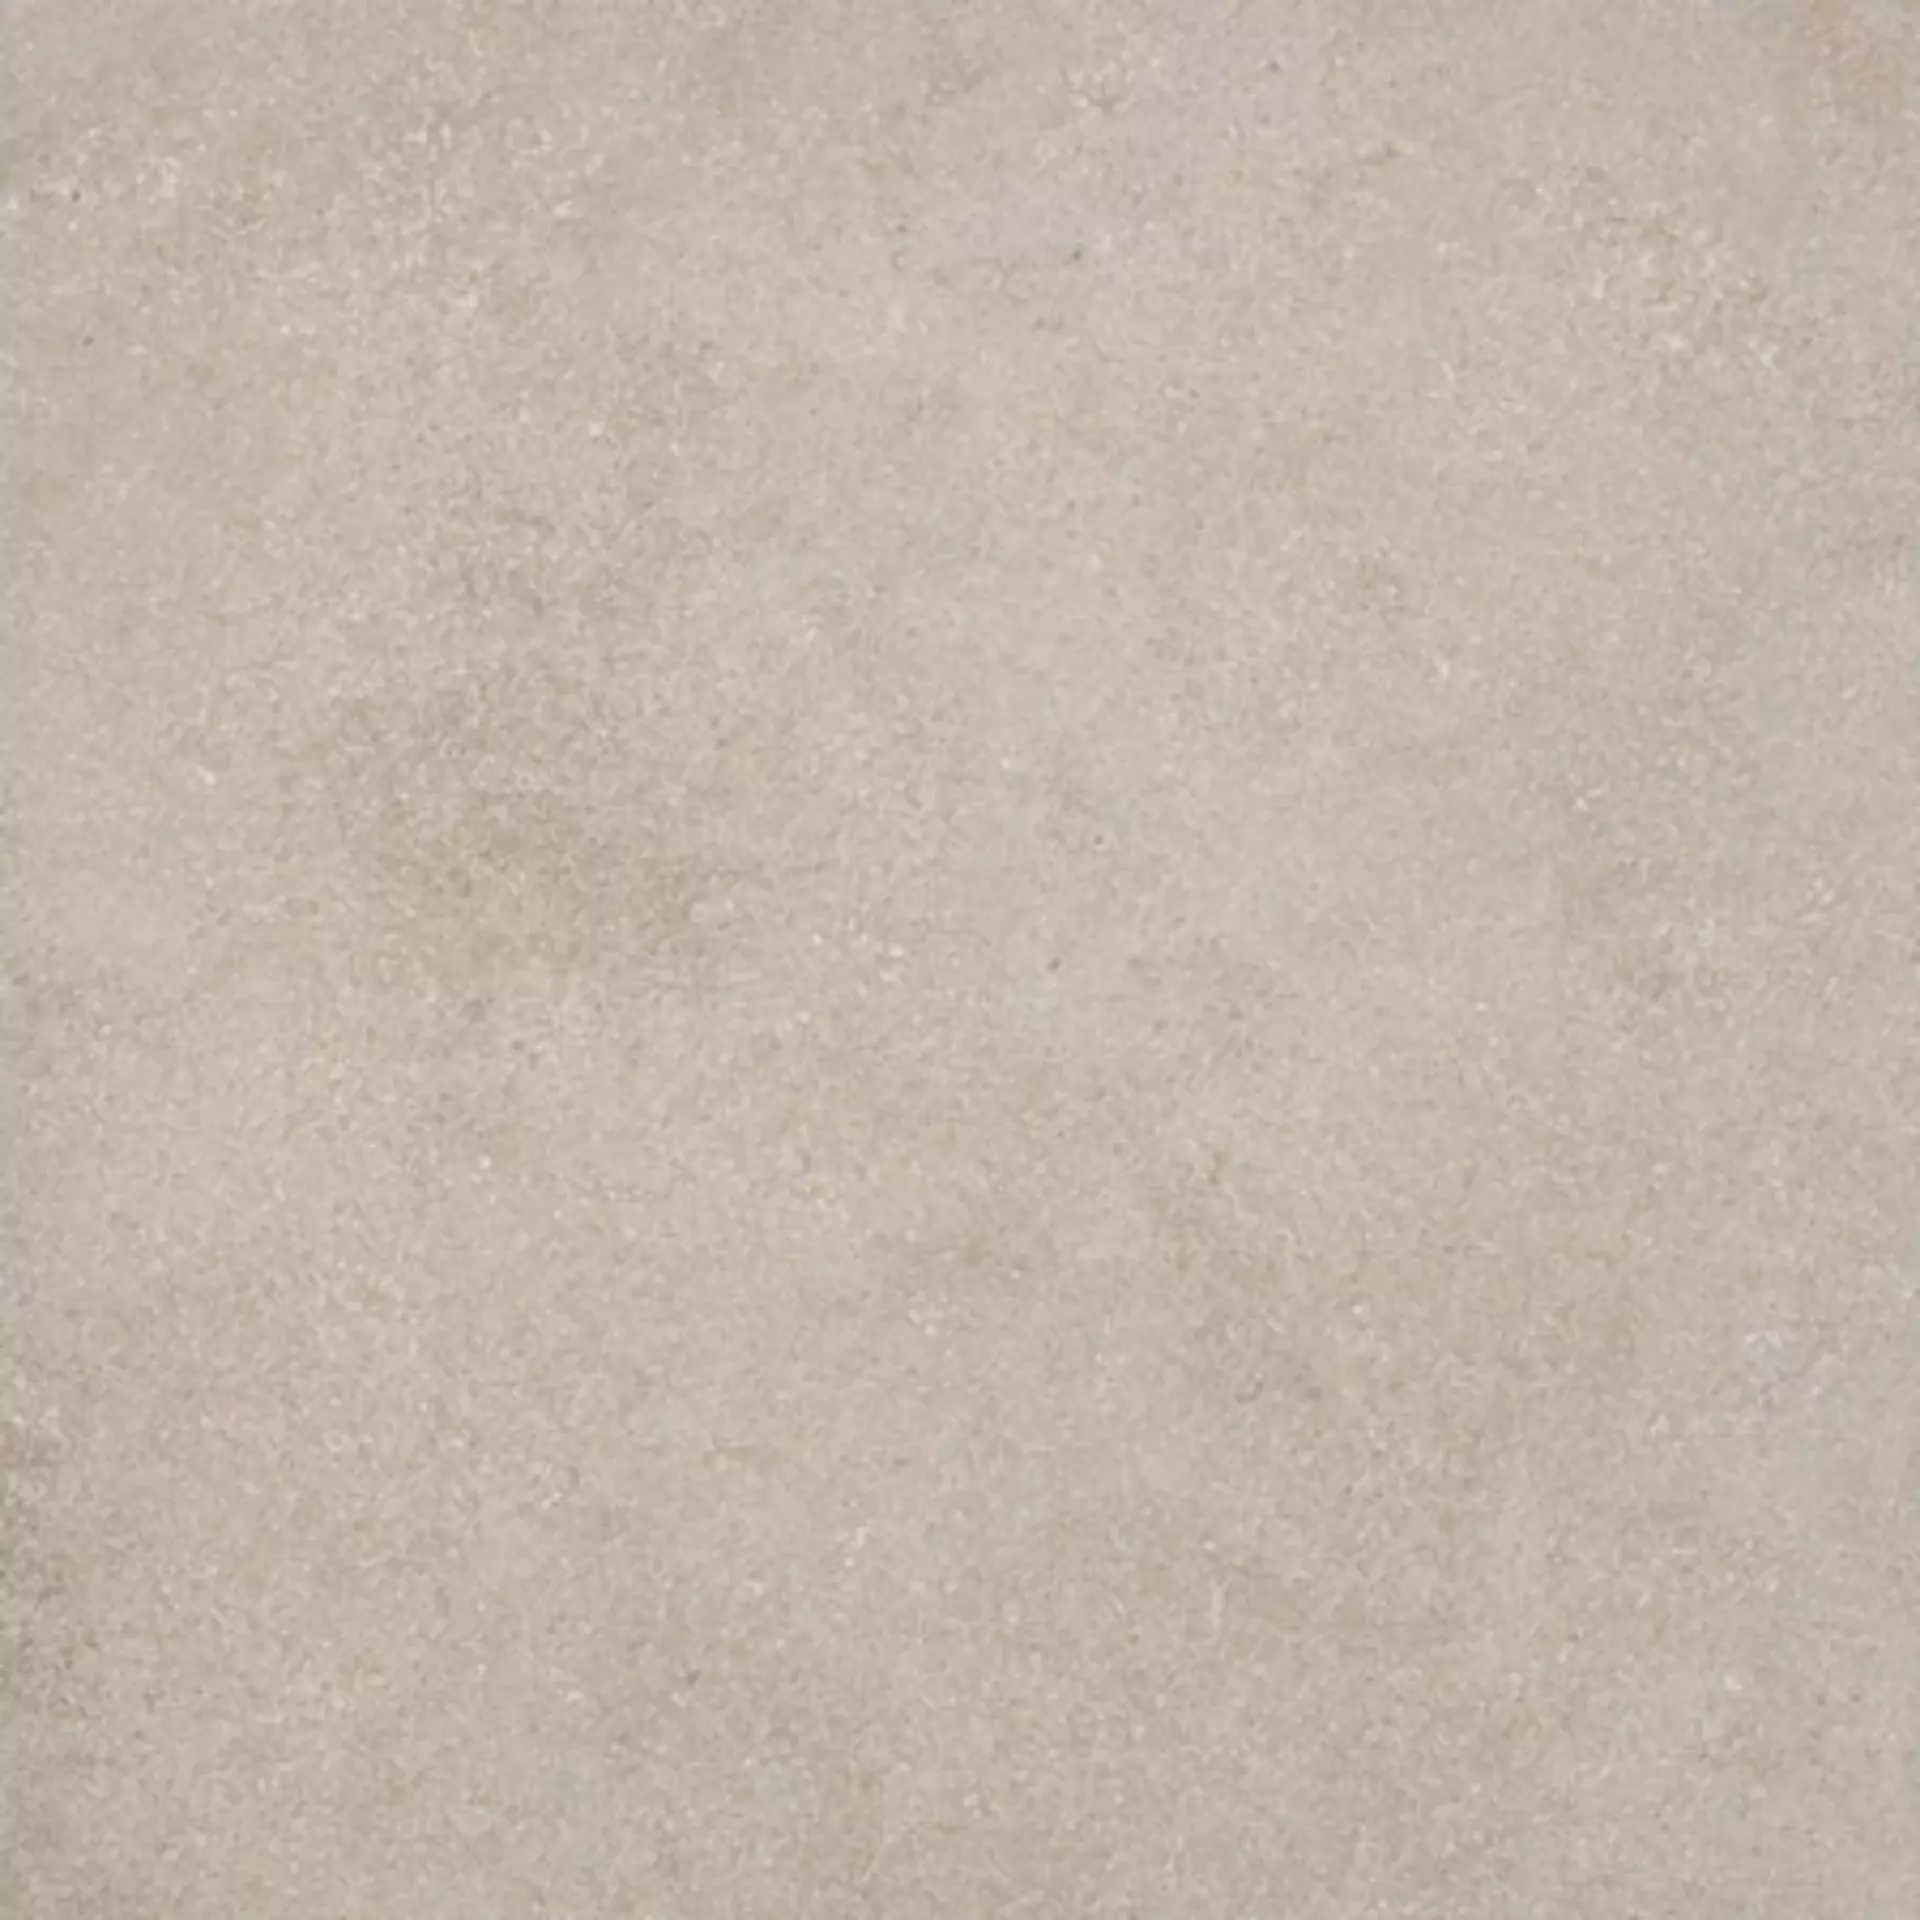 Casalgrande Eco Concrete Beige Naturale – Matt 10950053 60x60cm rectified 9mm